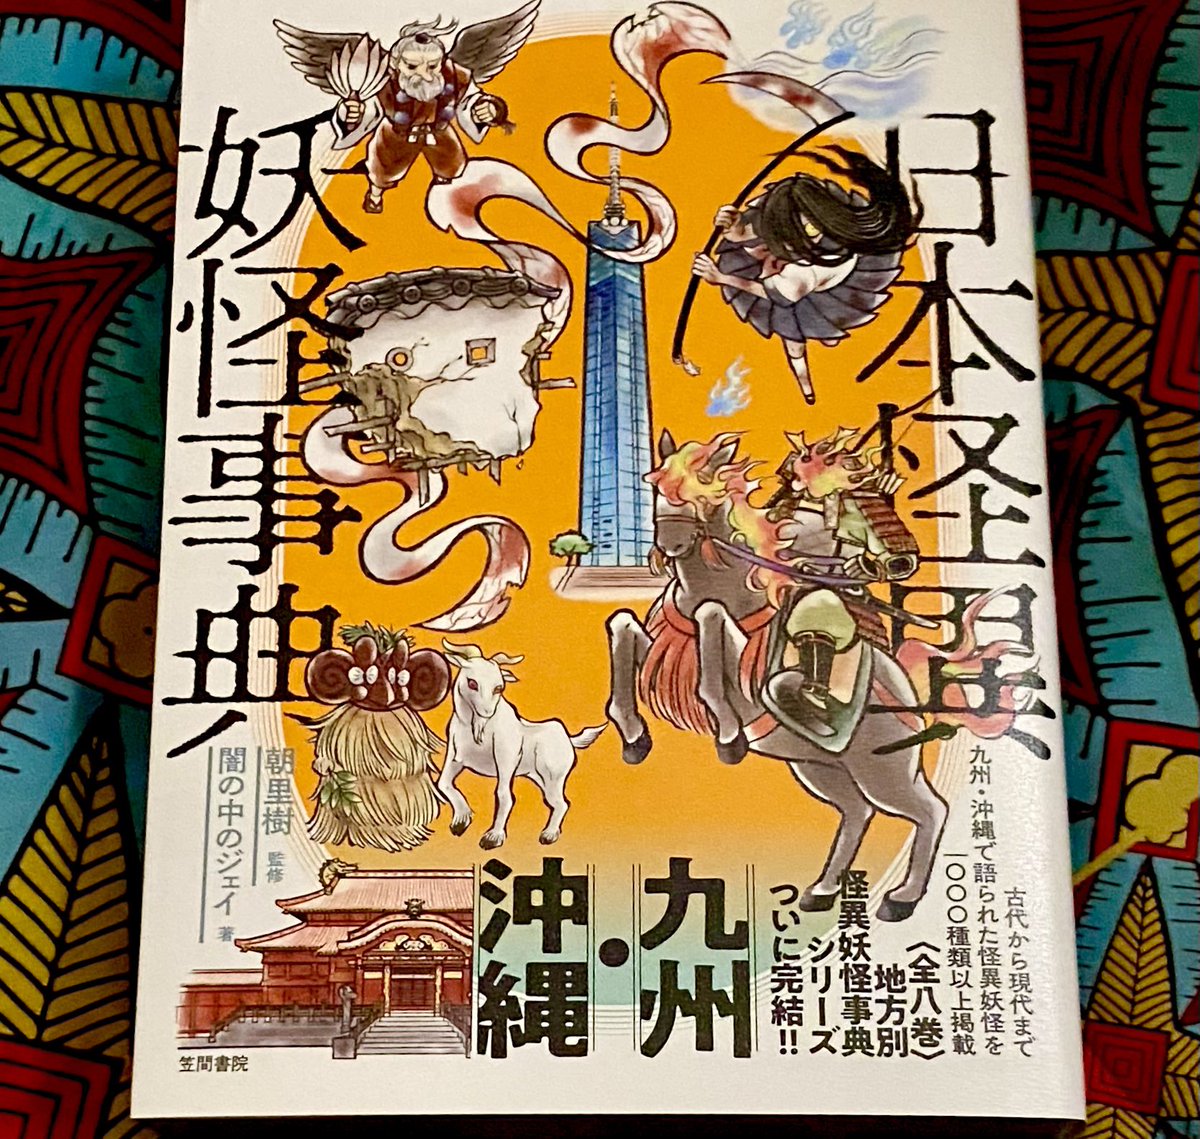 『日本怪異妖怪事典 九州・沖縄』購入。ついにシリーズ完結にちょっとさみしいキモチにもなりますが、とにもかくにもおめでたや!